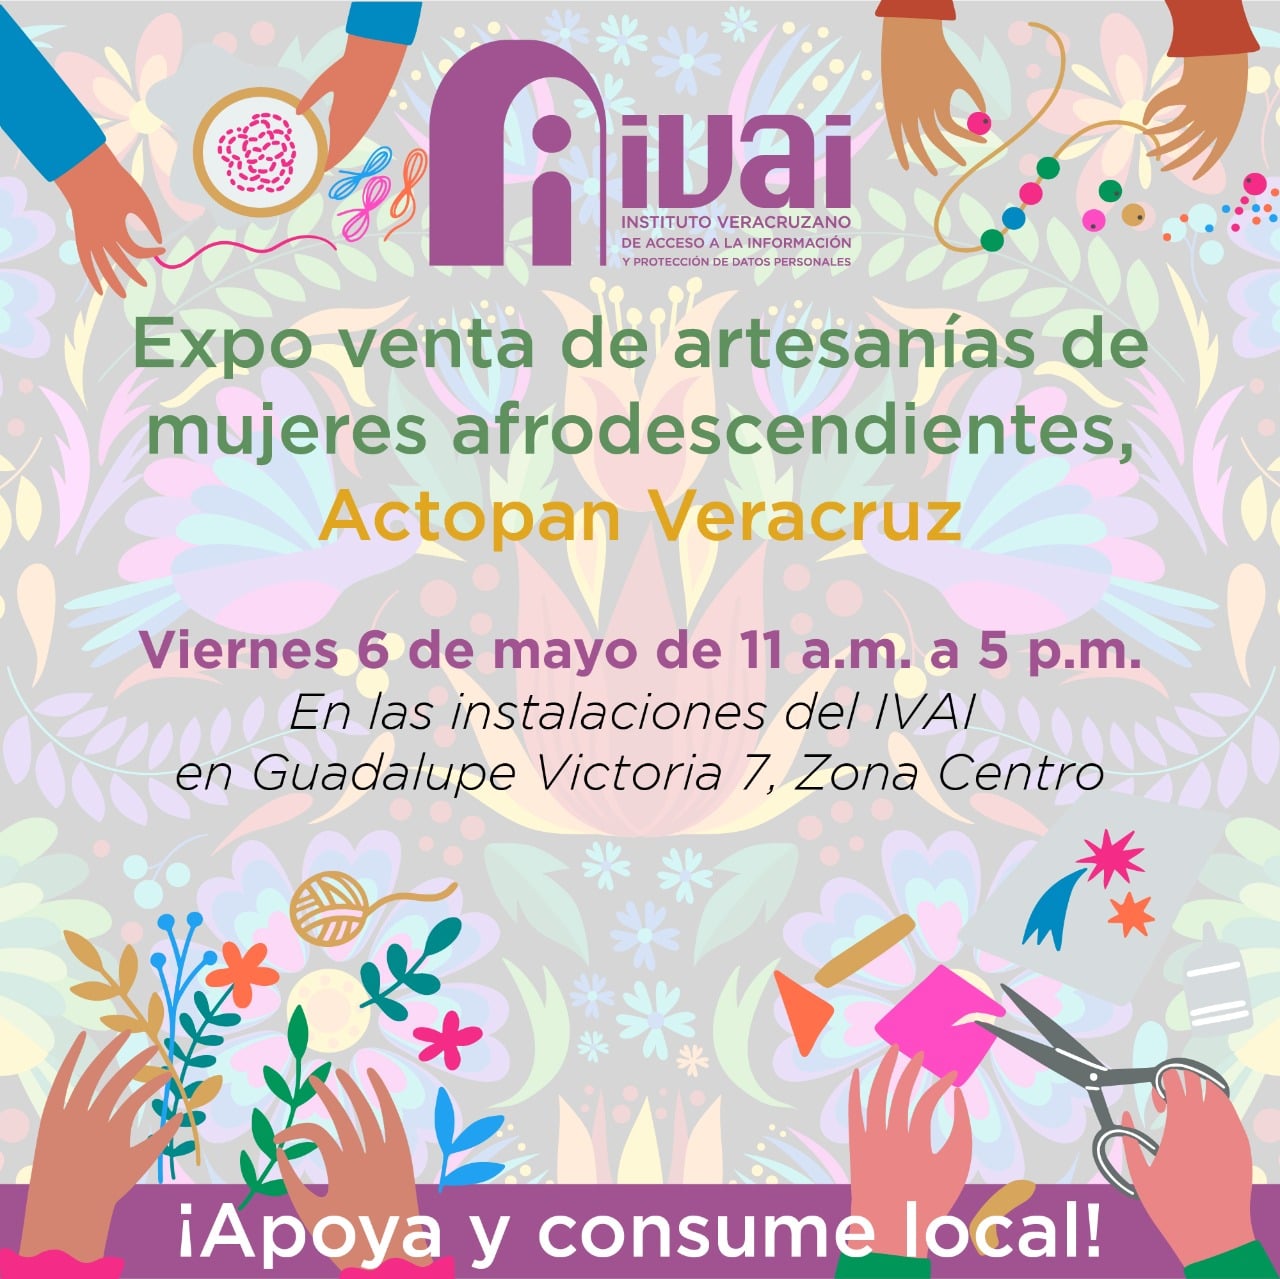 Expo venta de artesanías de mujeres Afrodescendientes.